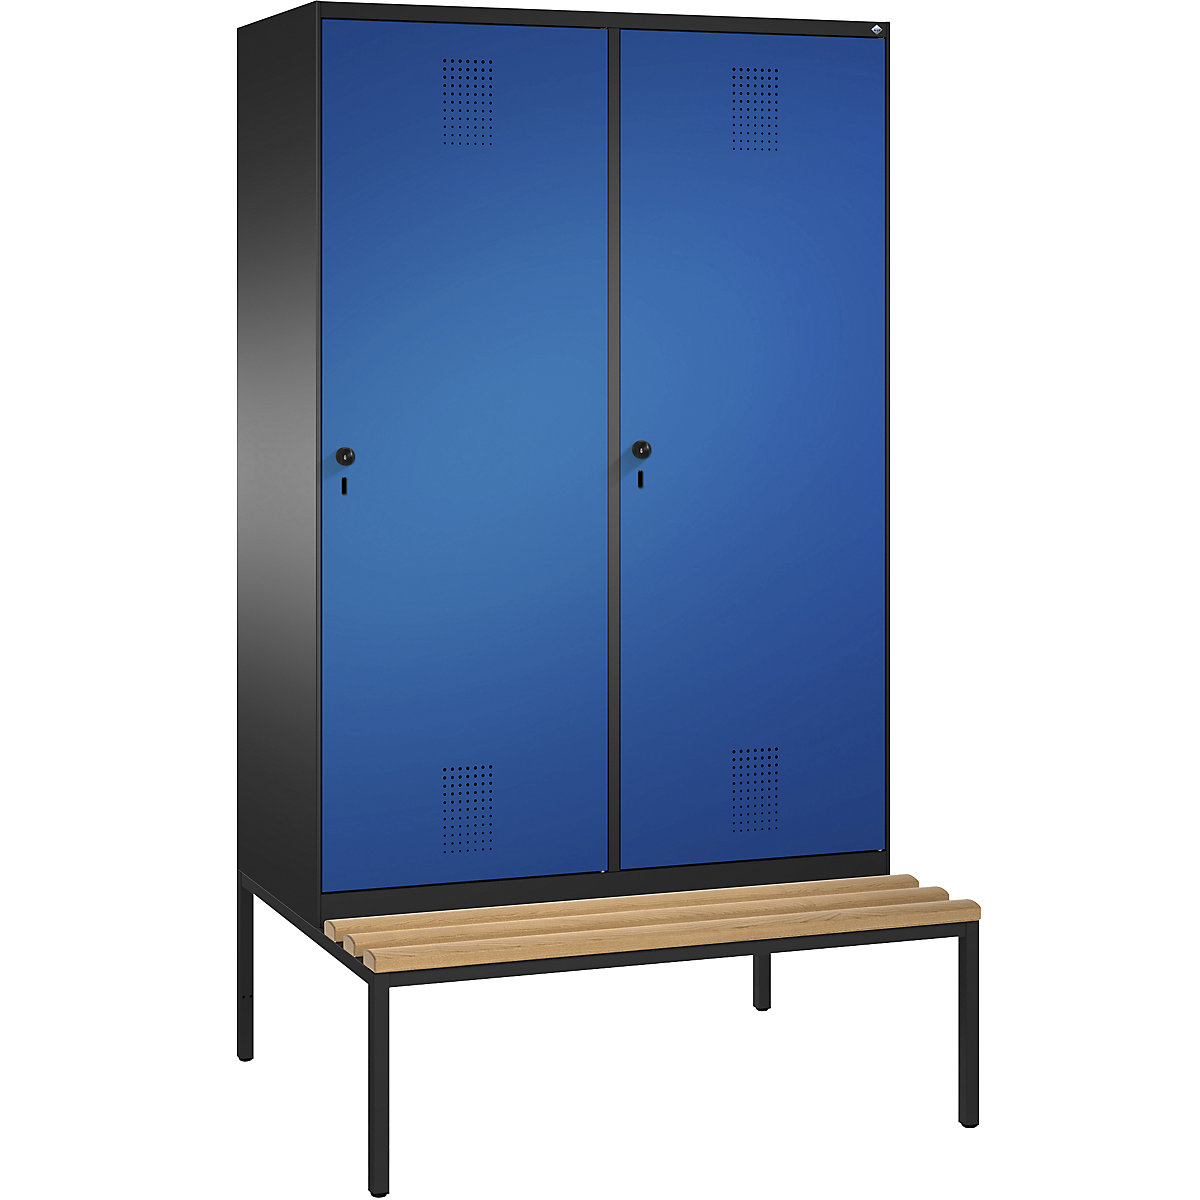 Šatní skříň s lavicí EVOLO s dveřmi přes 2 oddíly – C+P, 4 oddíly, 2 dveře, šířka oddílu 300 mm, černošedá / enciánová modrá-15